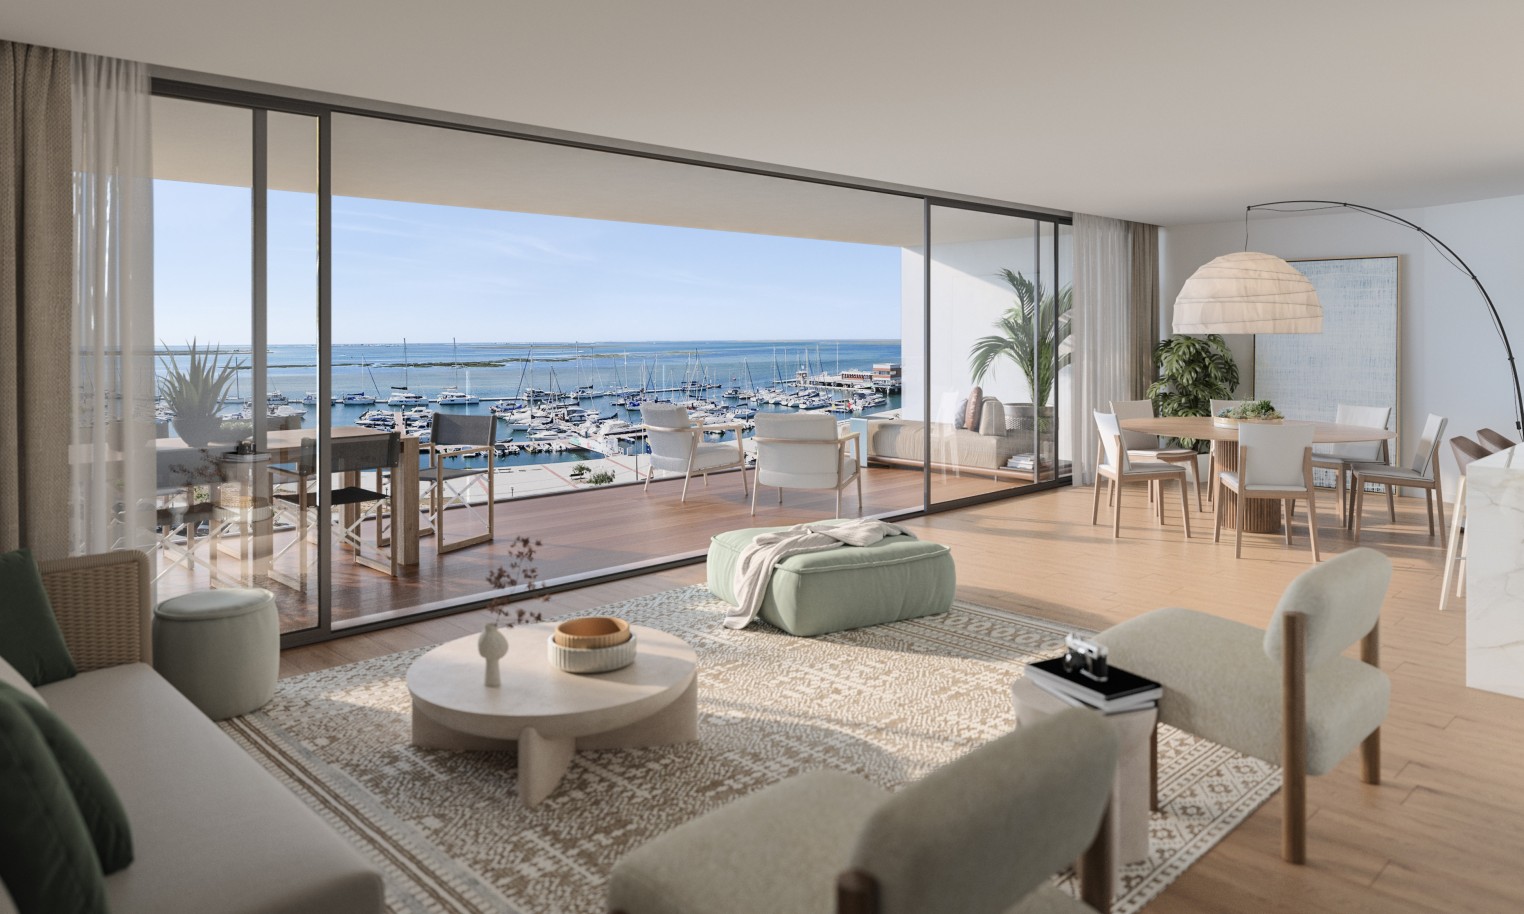 Appartements neufs avec vue sur mer, 1, 2 & 3 chambres, à vendre à Olhão, Algarve_244657